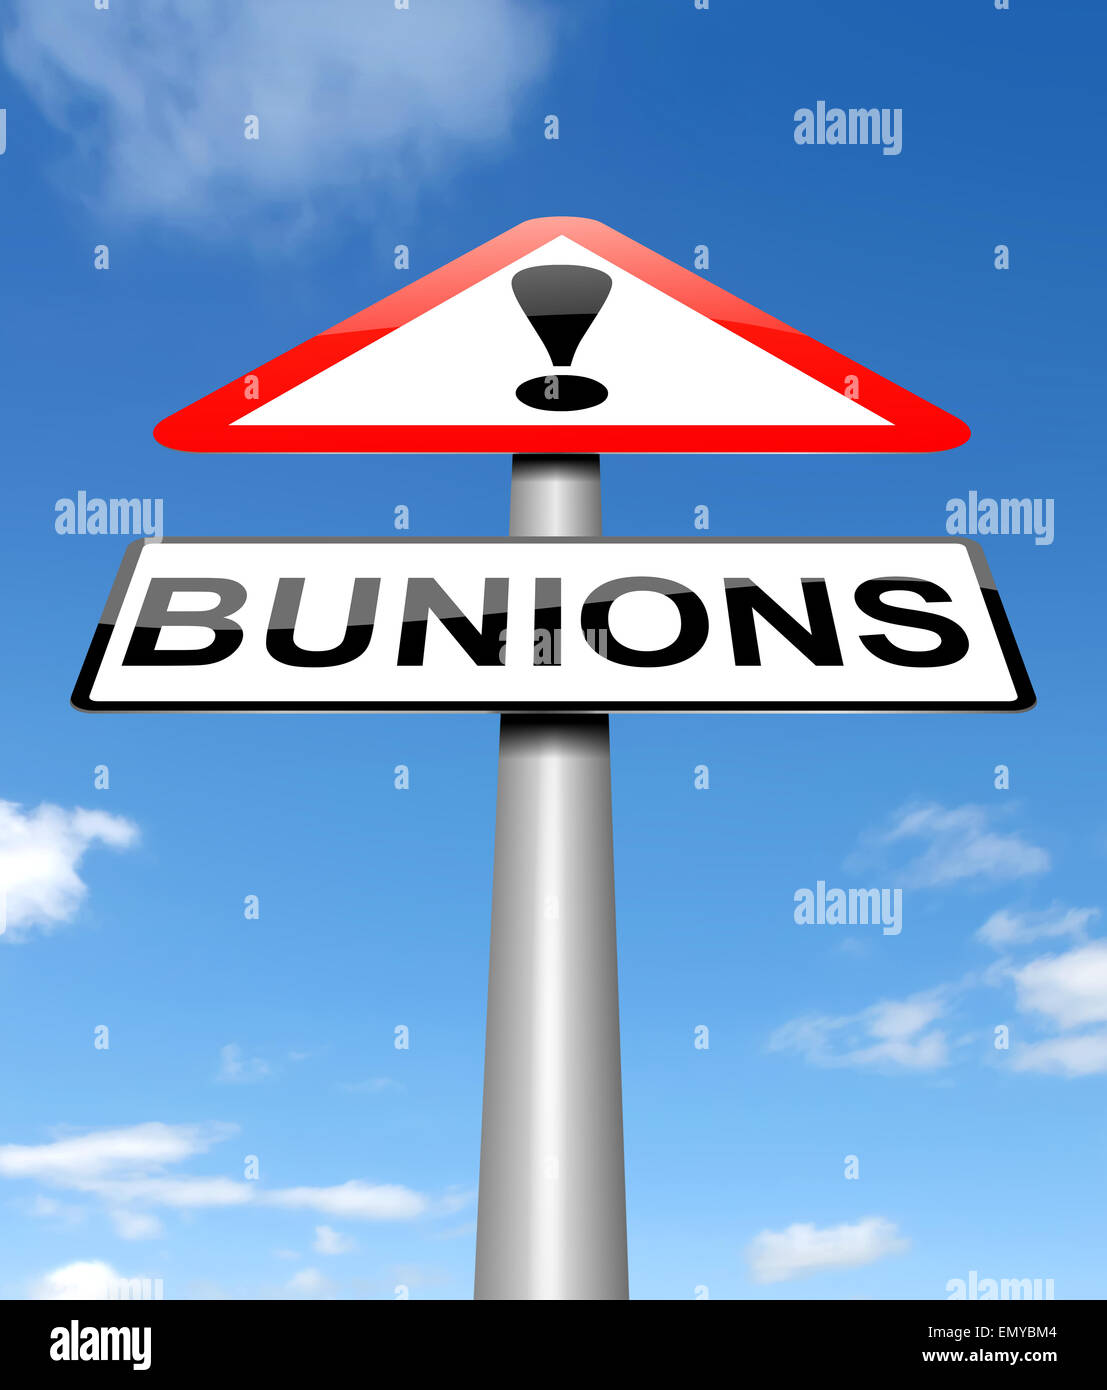 Bunions concept. Stock Photo